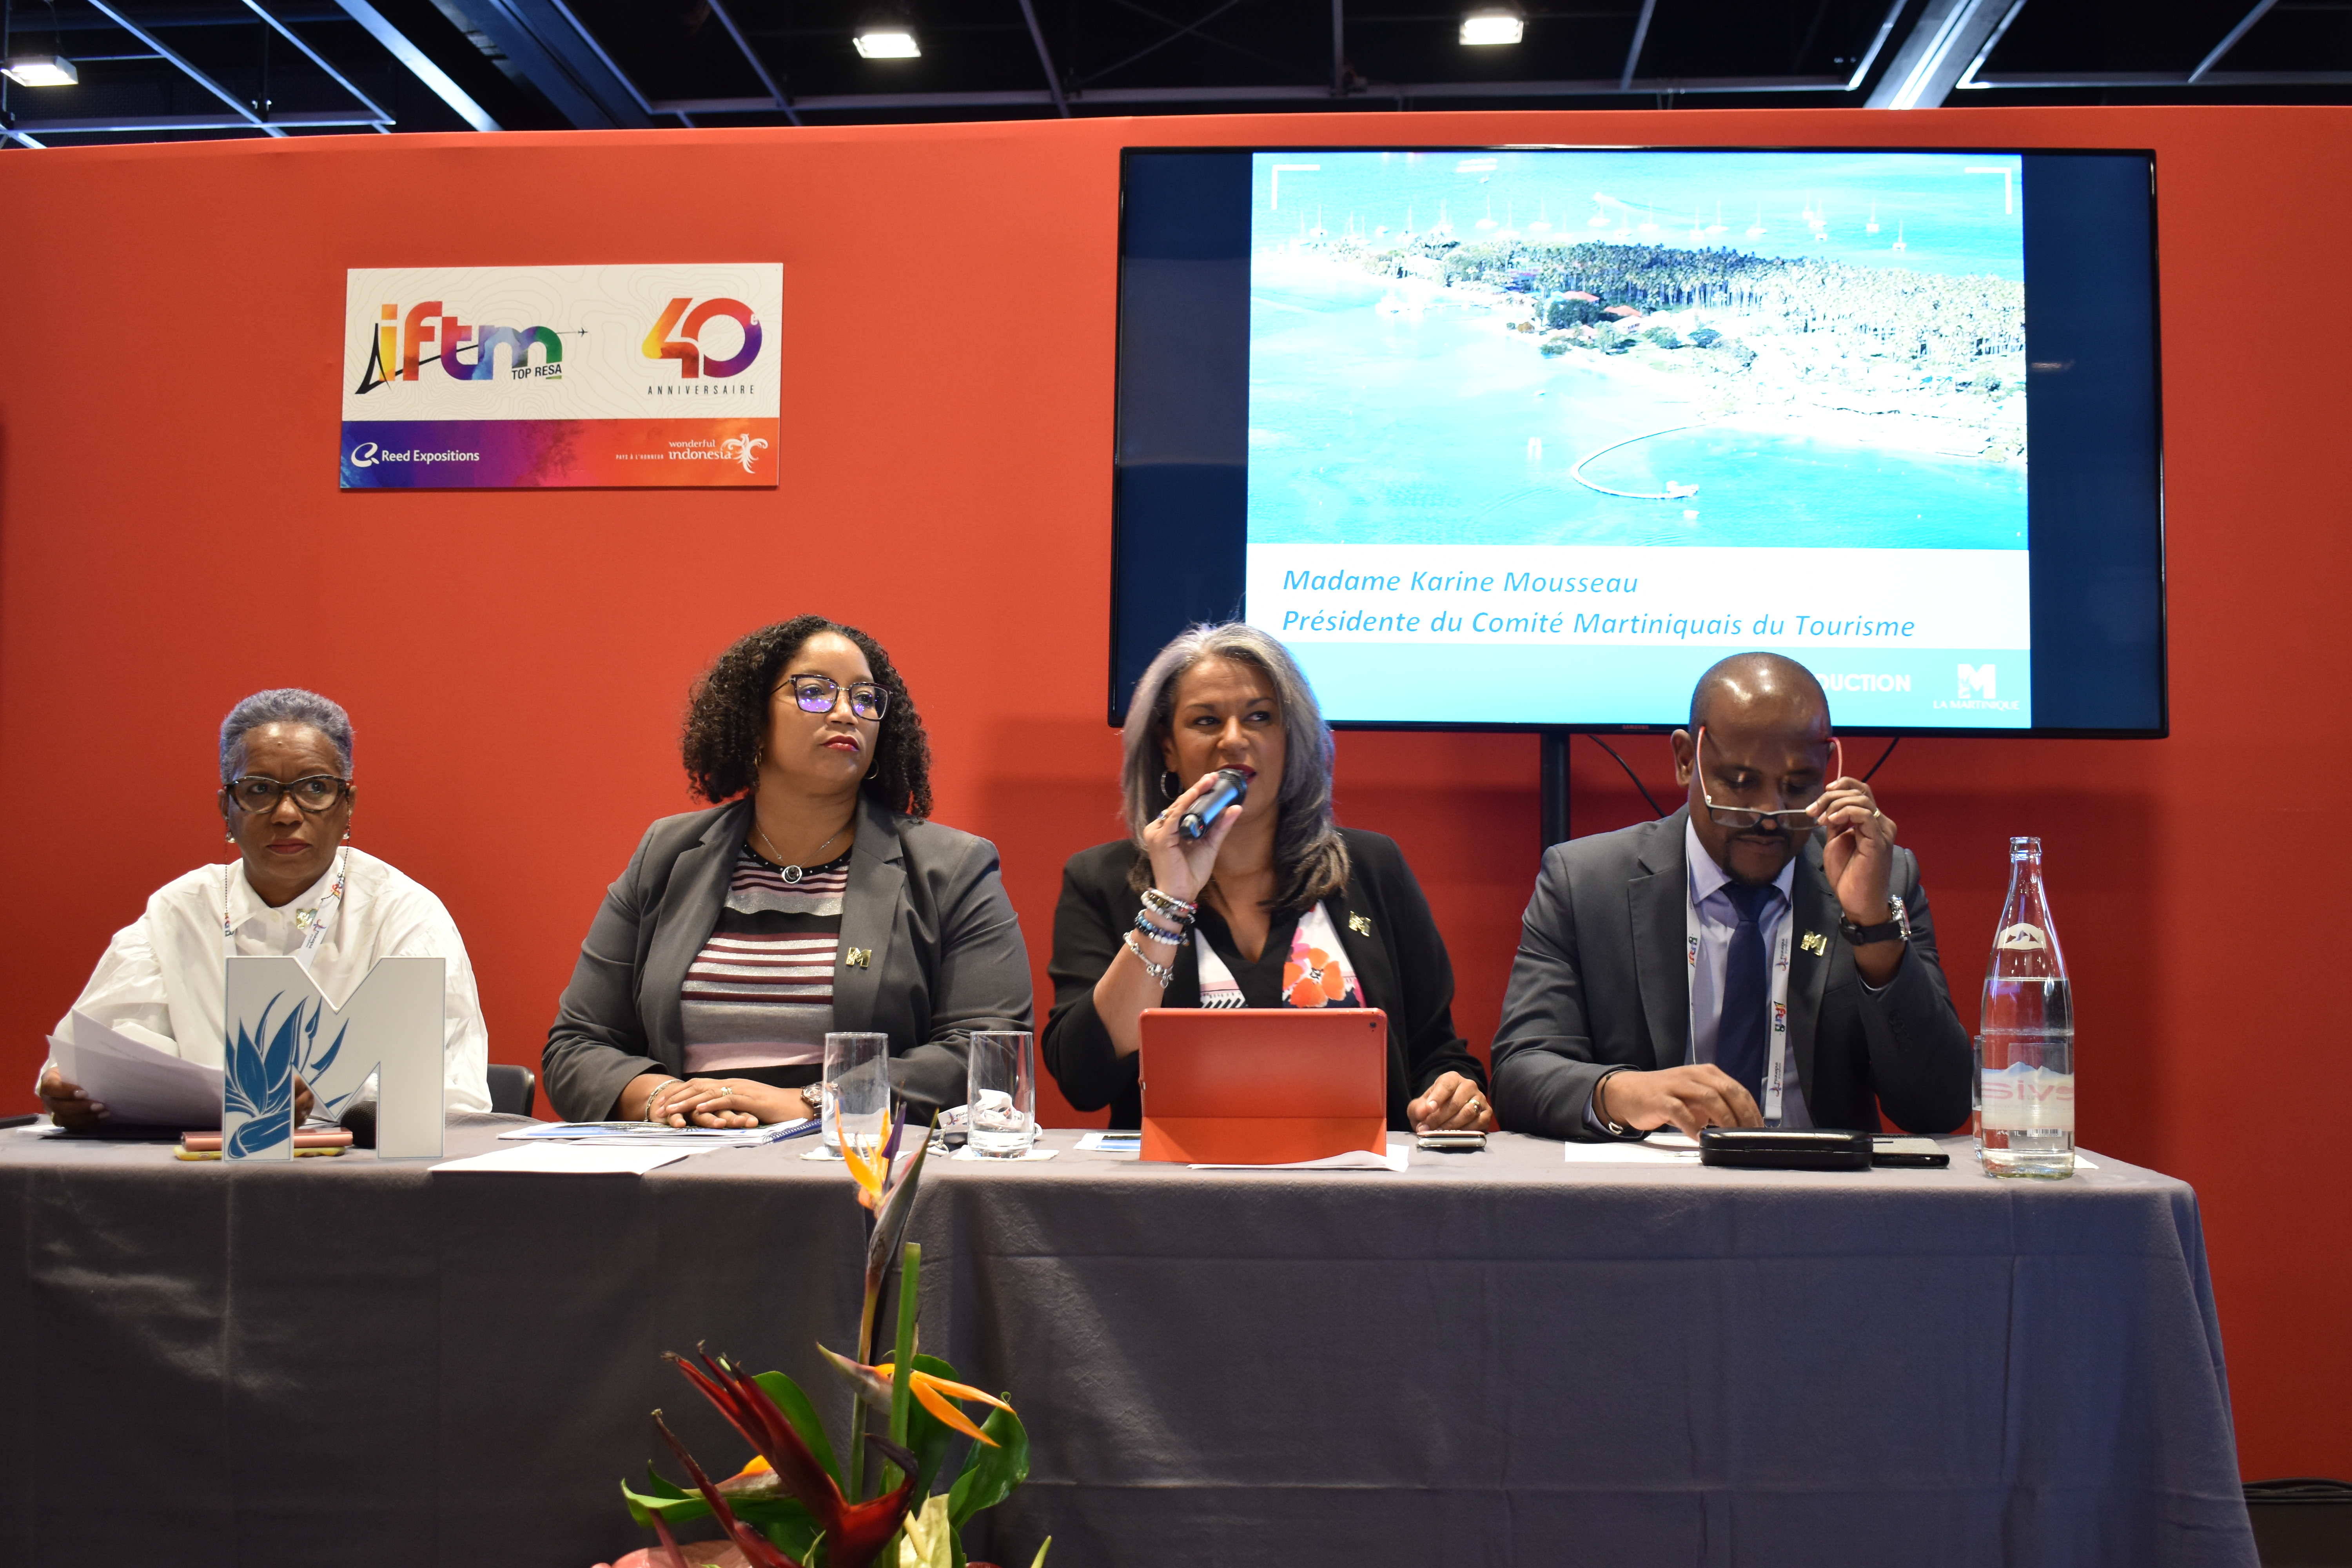 Tourisme en Martinique : Le Comité Martiniquais du Tourisme travaille sur &laquo;&nbsp;la montée en gamme&nbsp;&raquo; de la destination pour attirer de nouveaux visiteurs